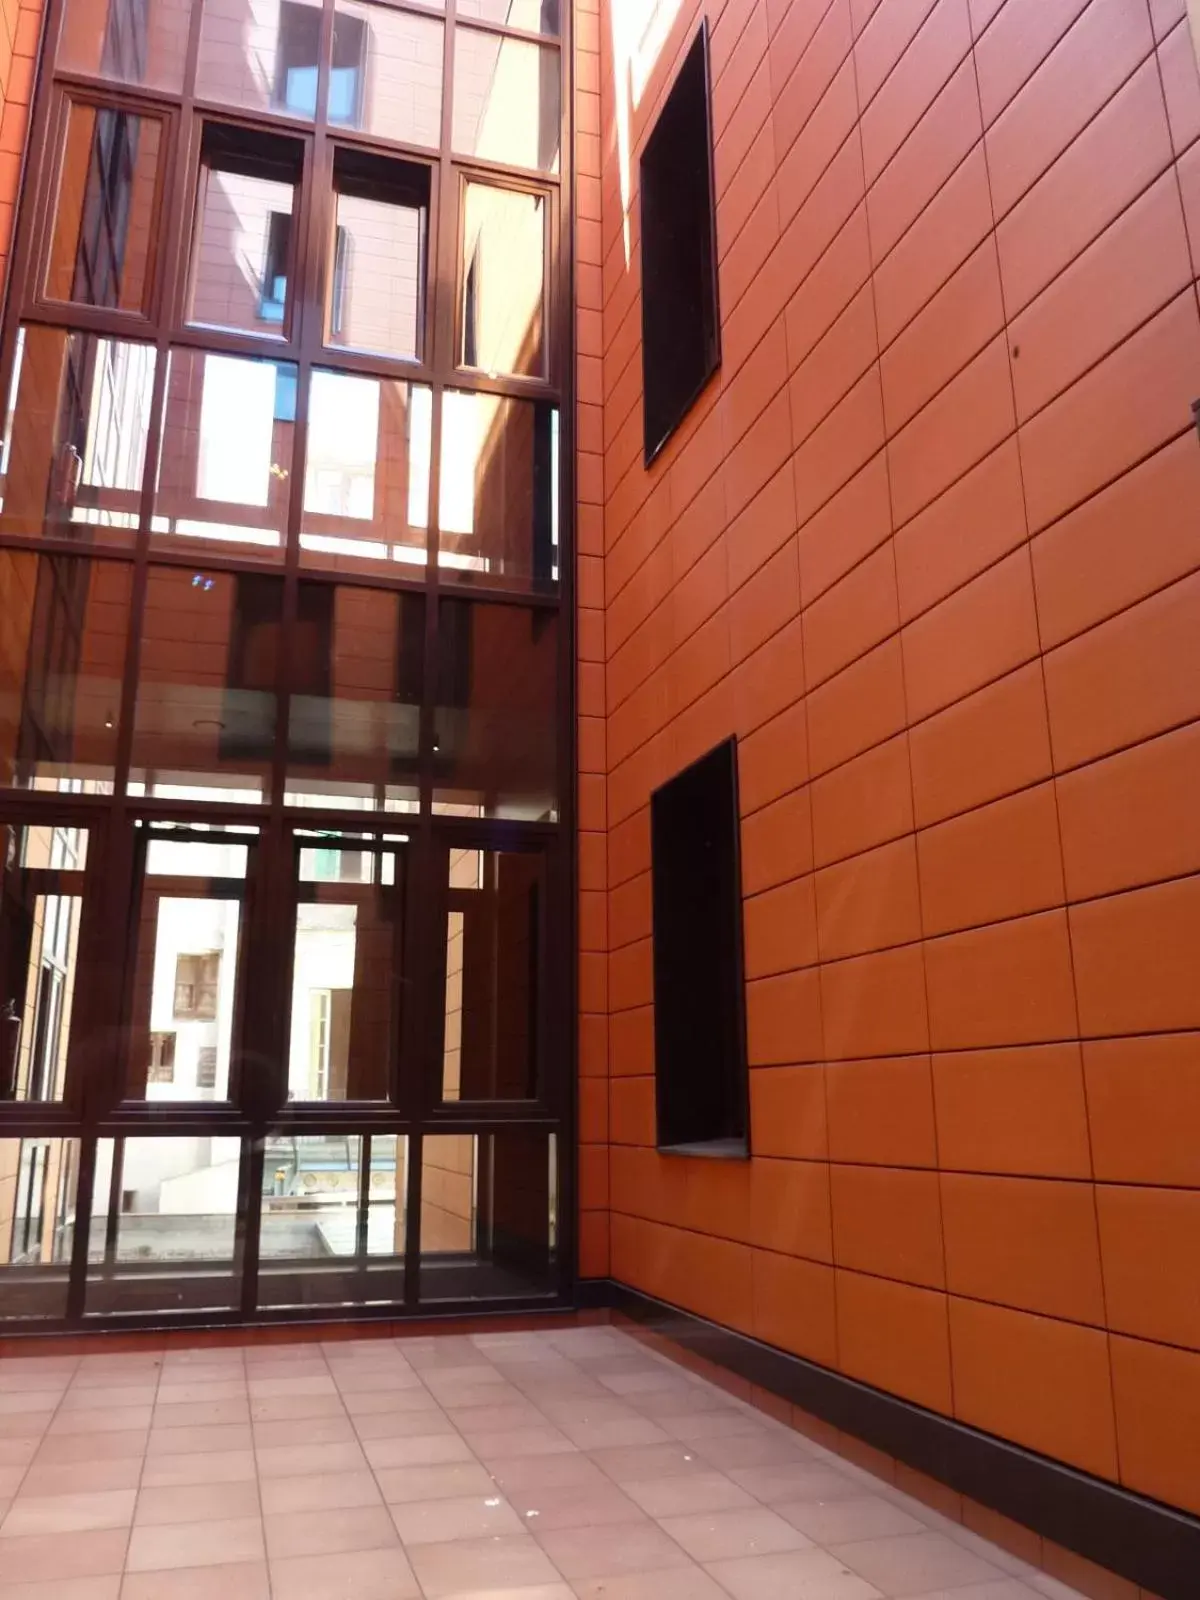 Facade/entrance in Barcelona House